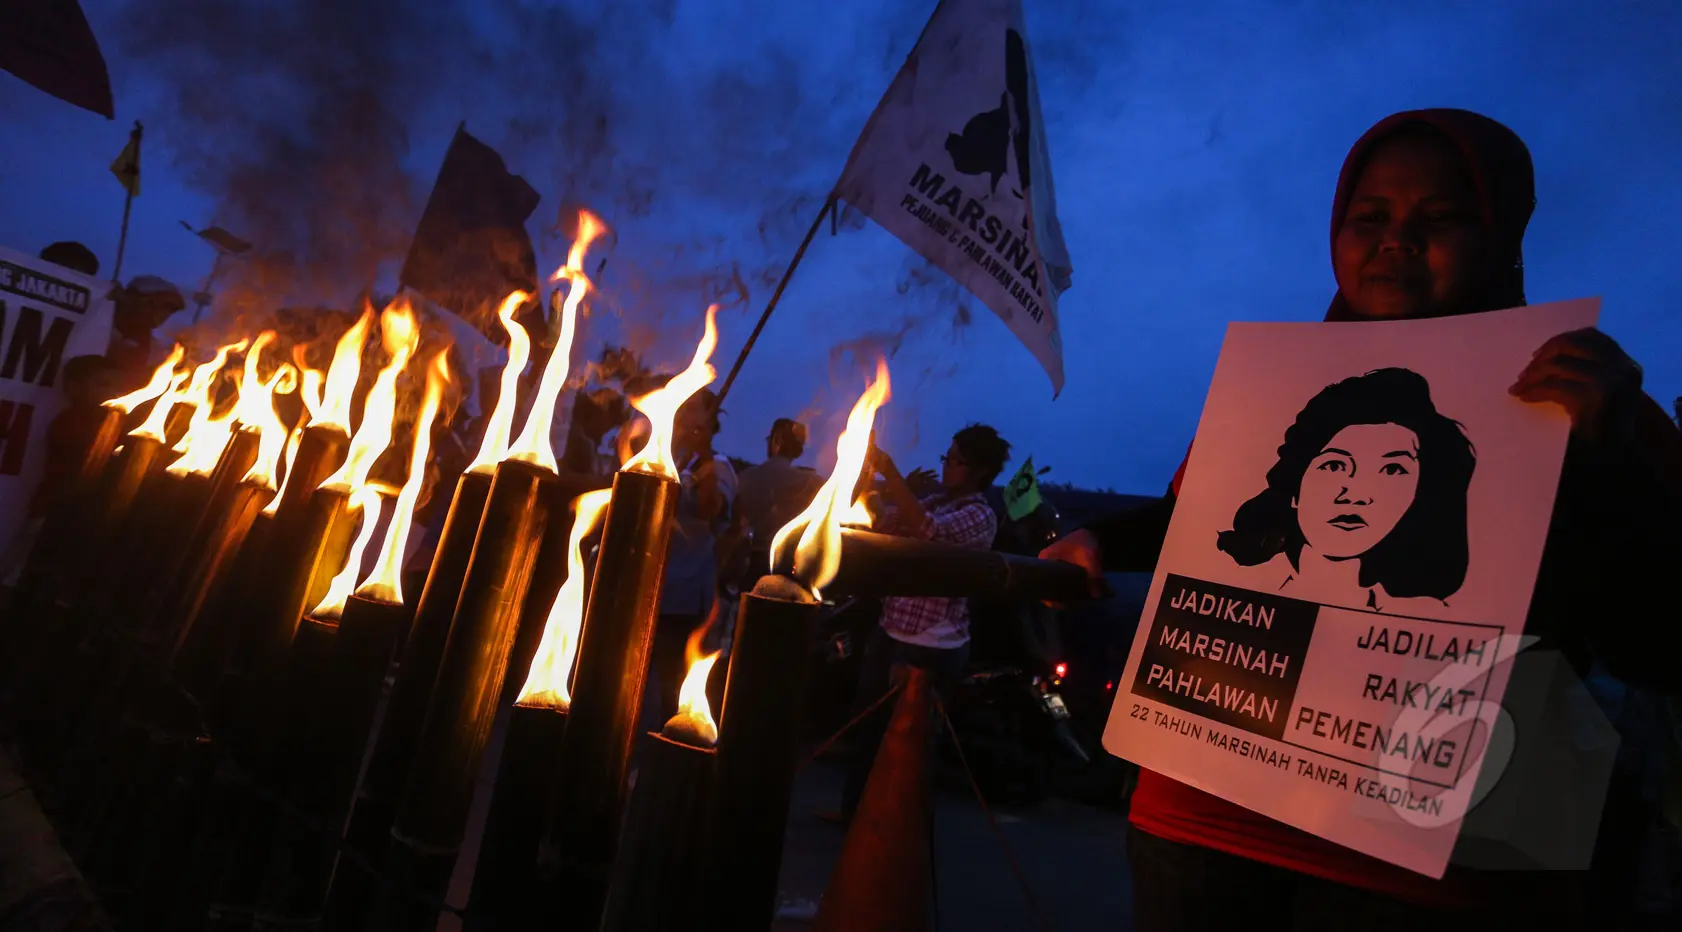 Puluhan buruh wanita saat menggelar aksi memperingati 22 tahun tanpa keadilan 